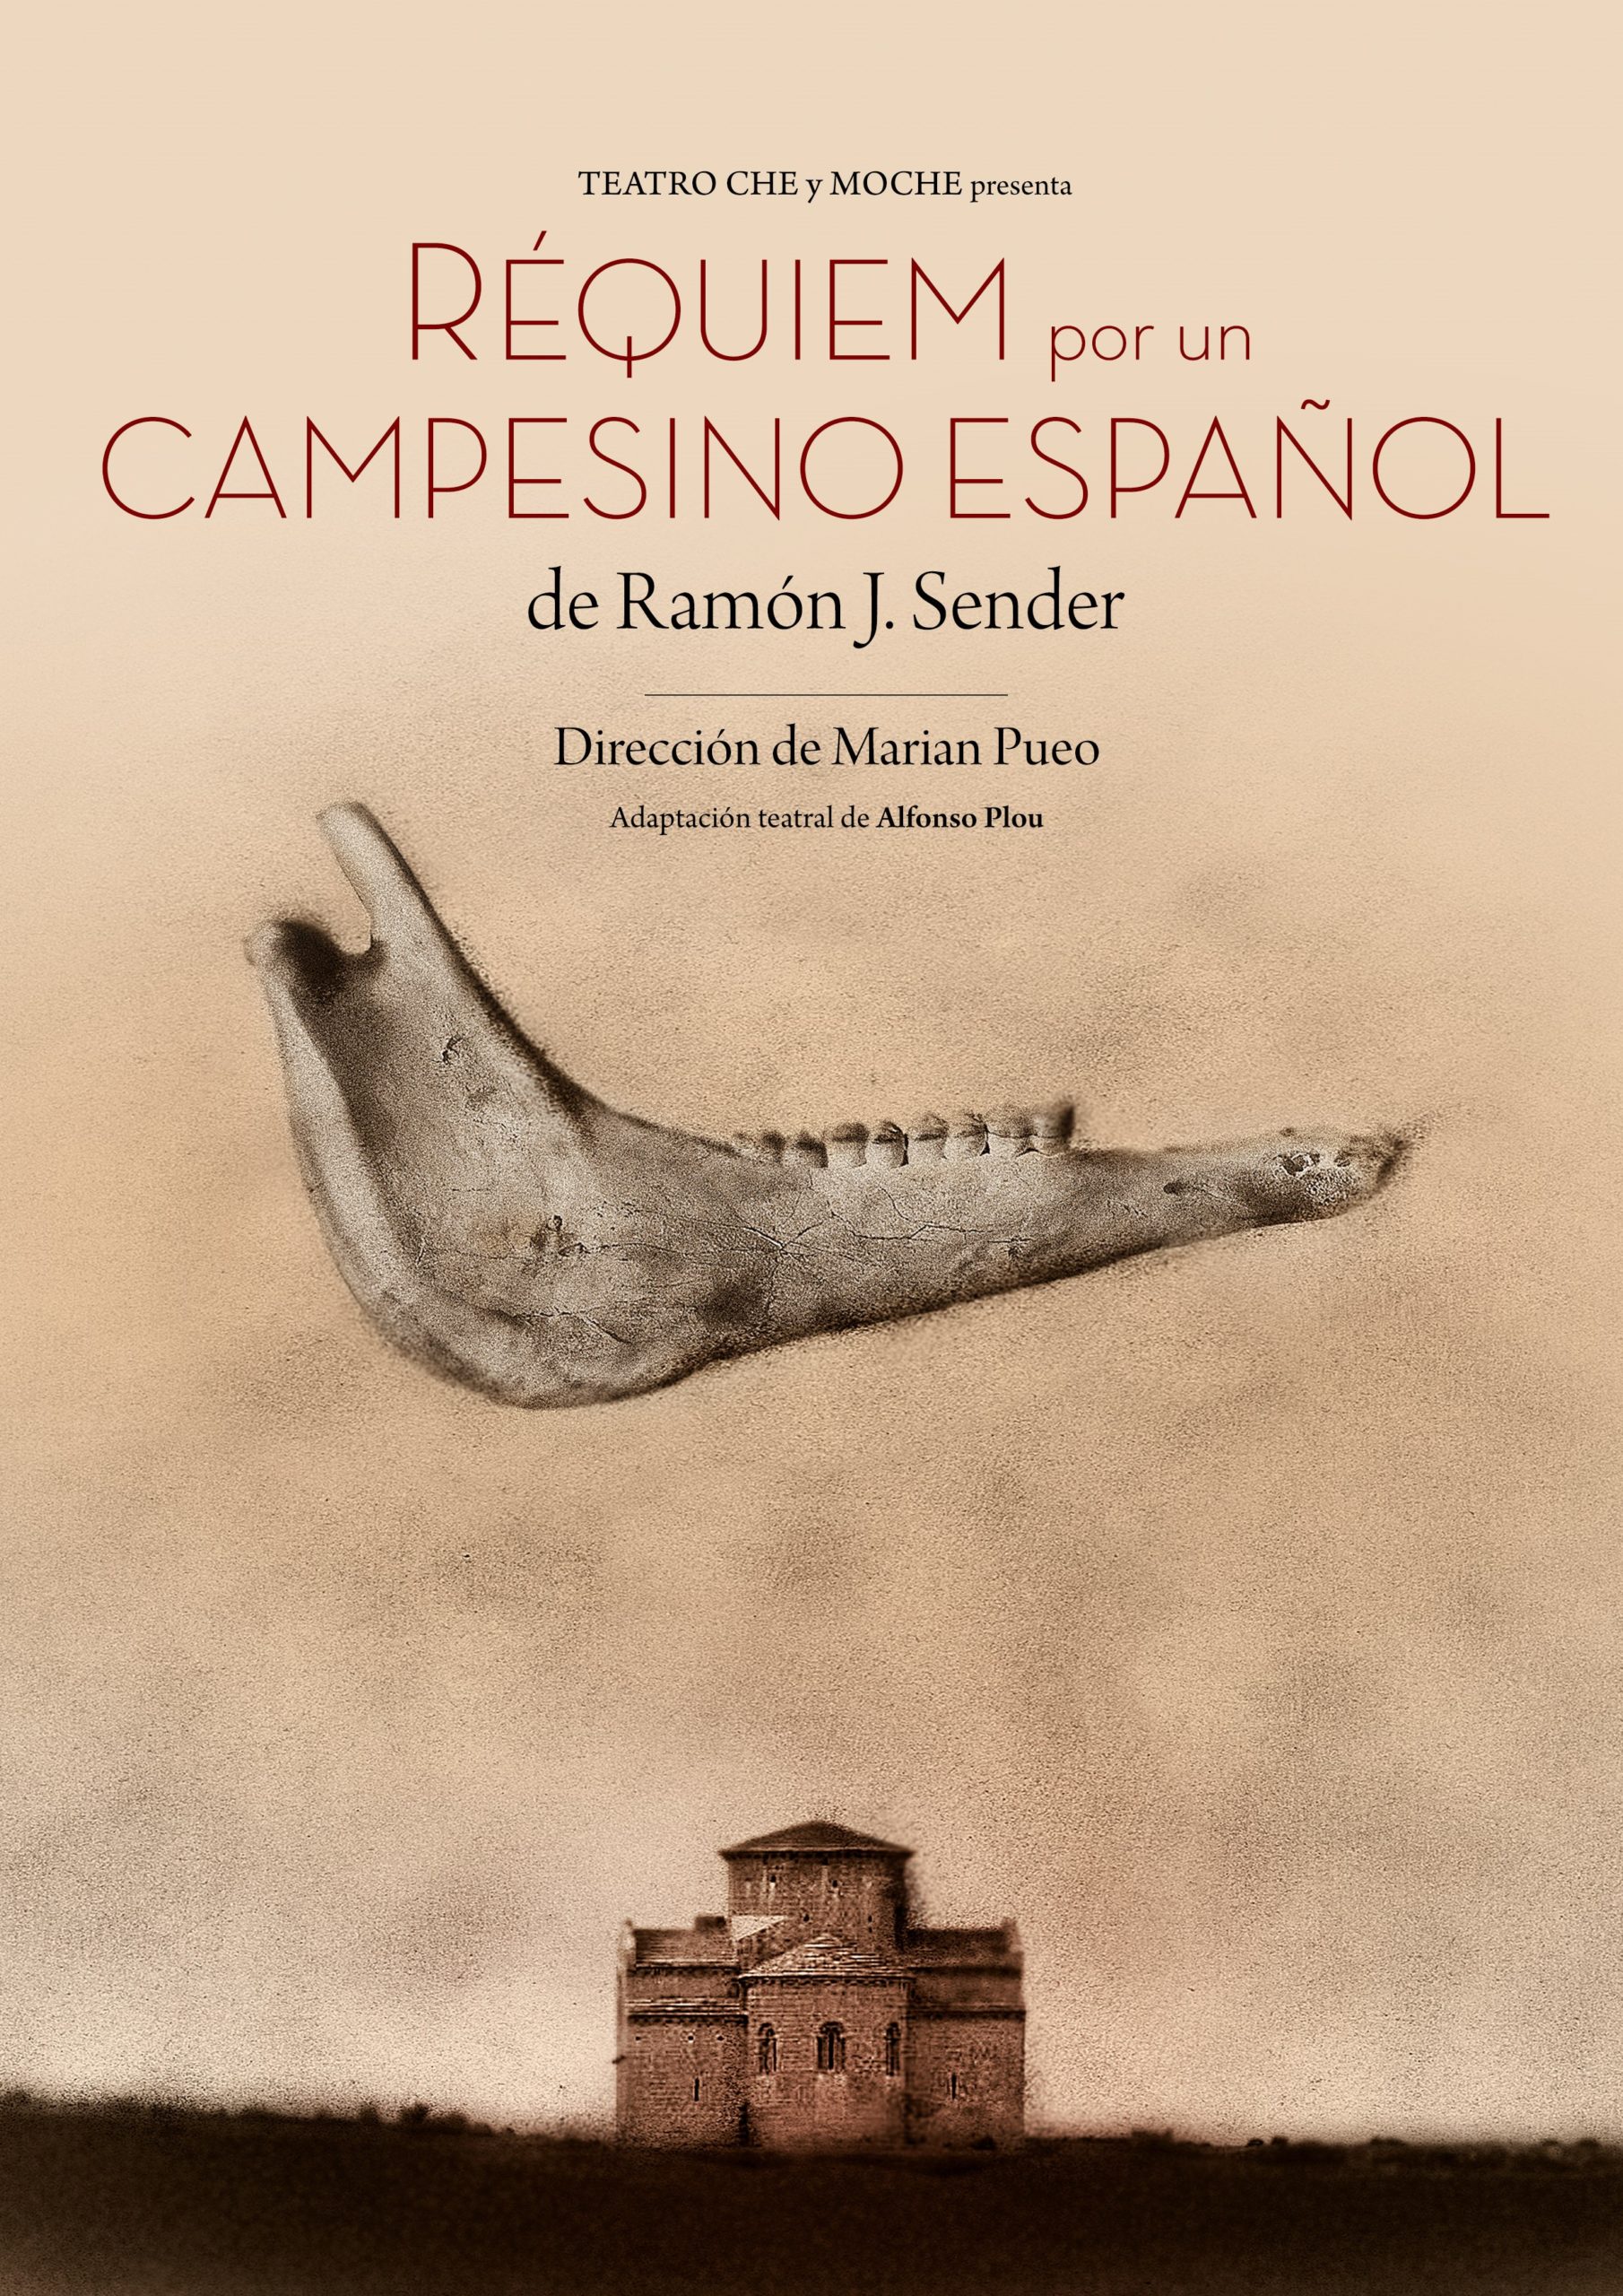 Film Fest Gent  Réquiem por un campesino español (Requiem for a Spanish  Peasant)